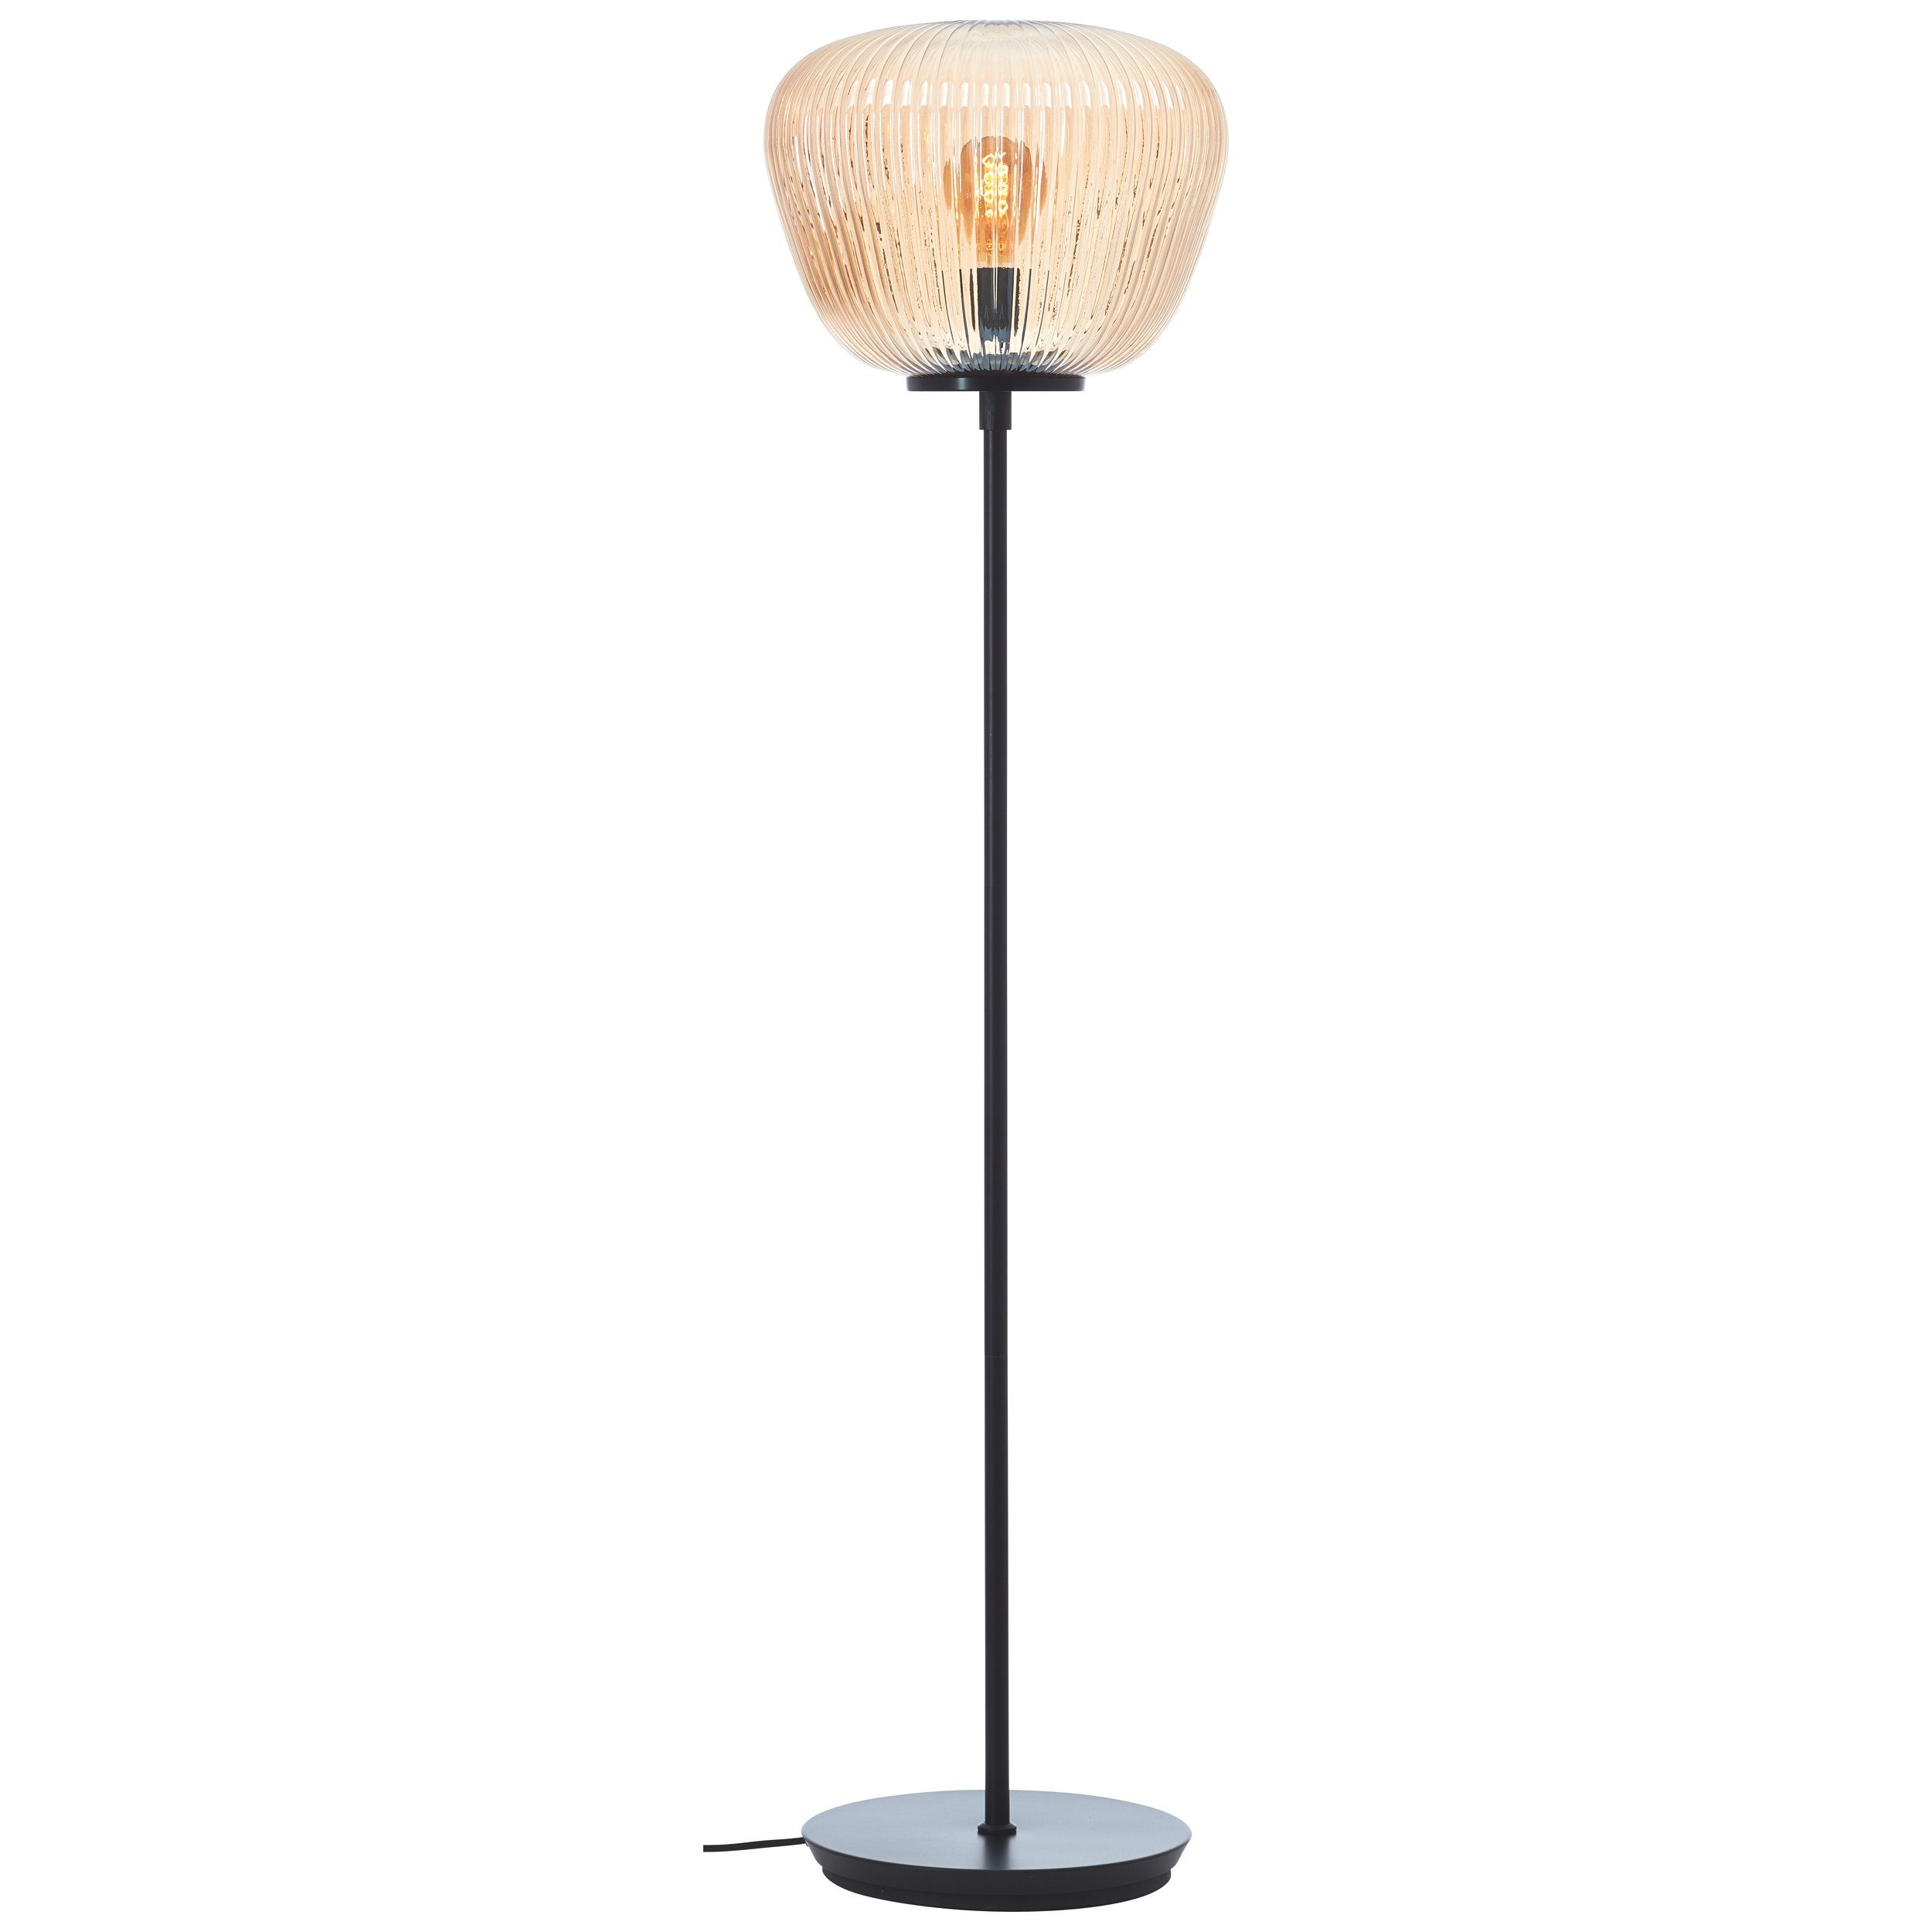 Lightbox Stehlampe, ohne Leuchtmittel, Stehlampe, 35 cm, Amber-Bernsteinfarben x Riffelglas, E27, 140